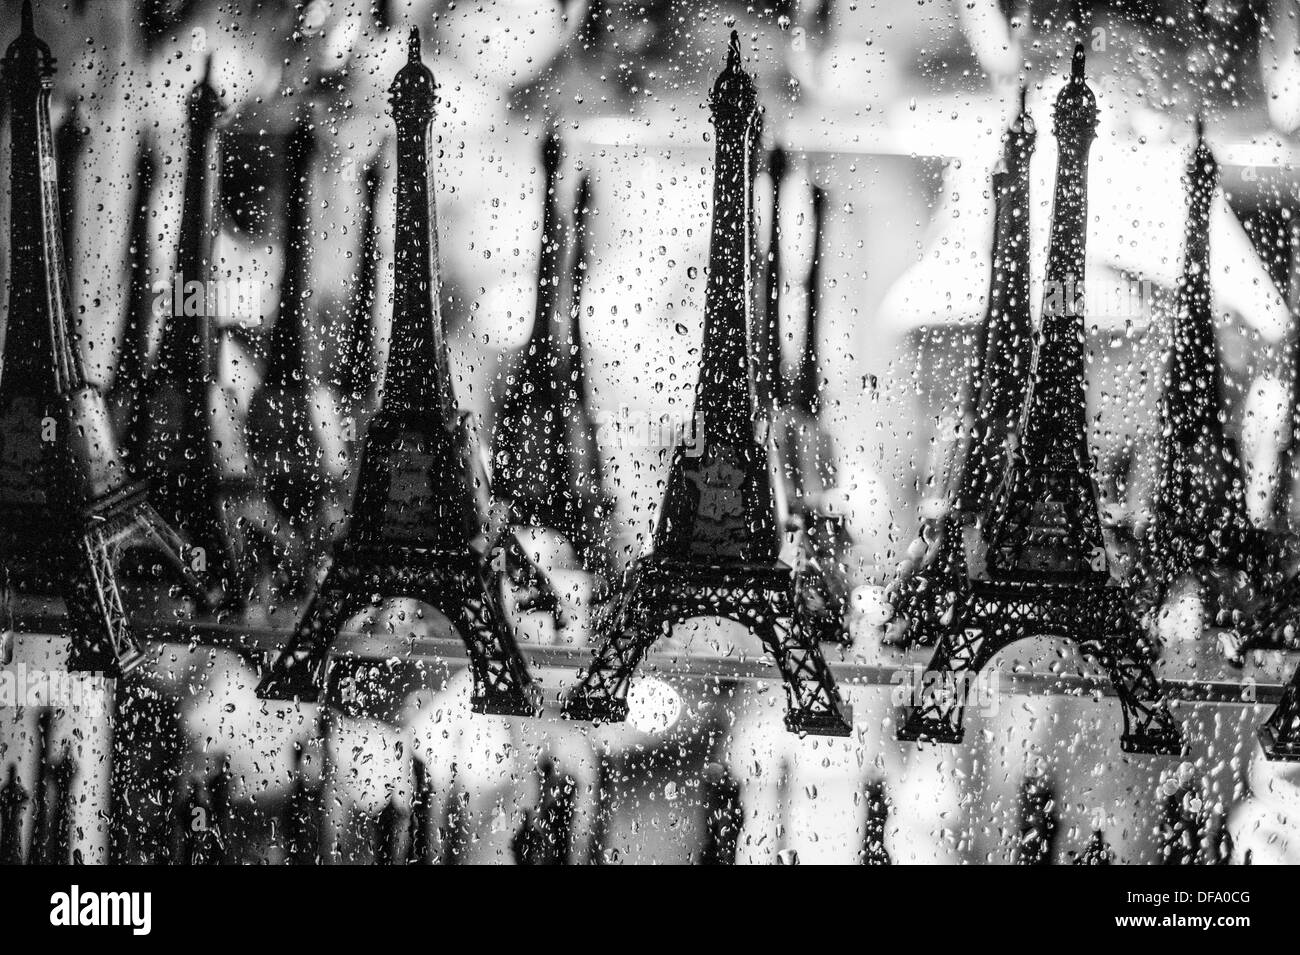 La vetrina del negozio all'interno della torre Eiffel in una piovosa notte con modello di souvenir torri in vendita. Foto Stock